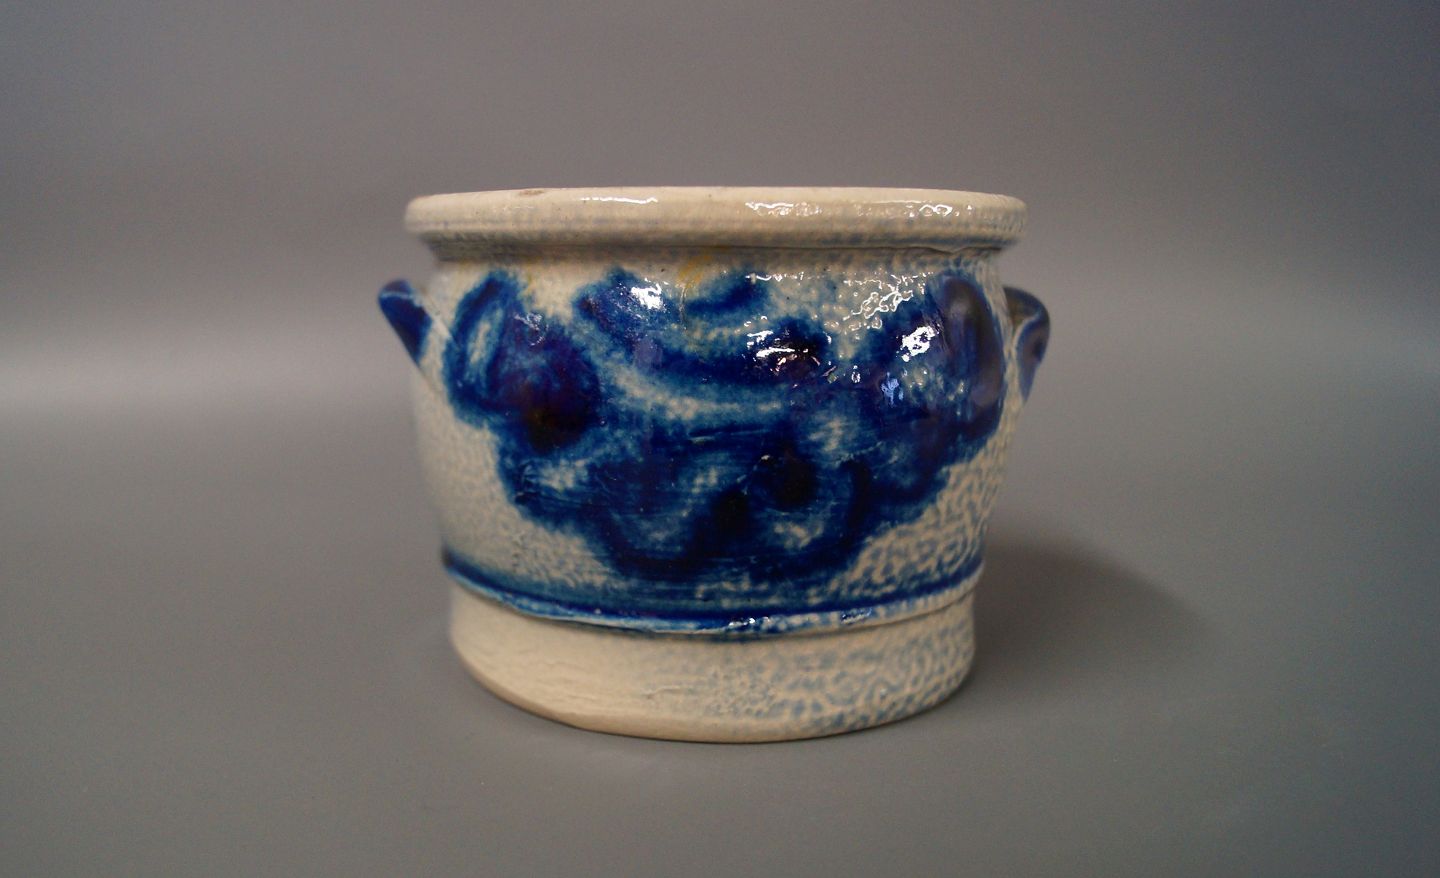 Lille keramik krukke med blåt mønster. 5000m2 udstilling. - Osted Antik & Design